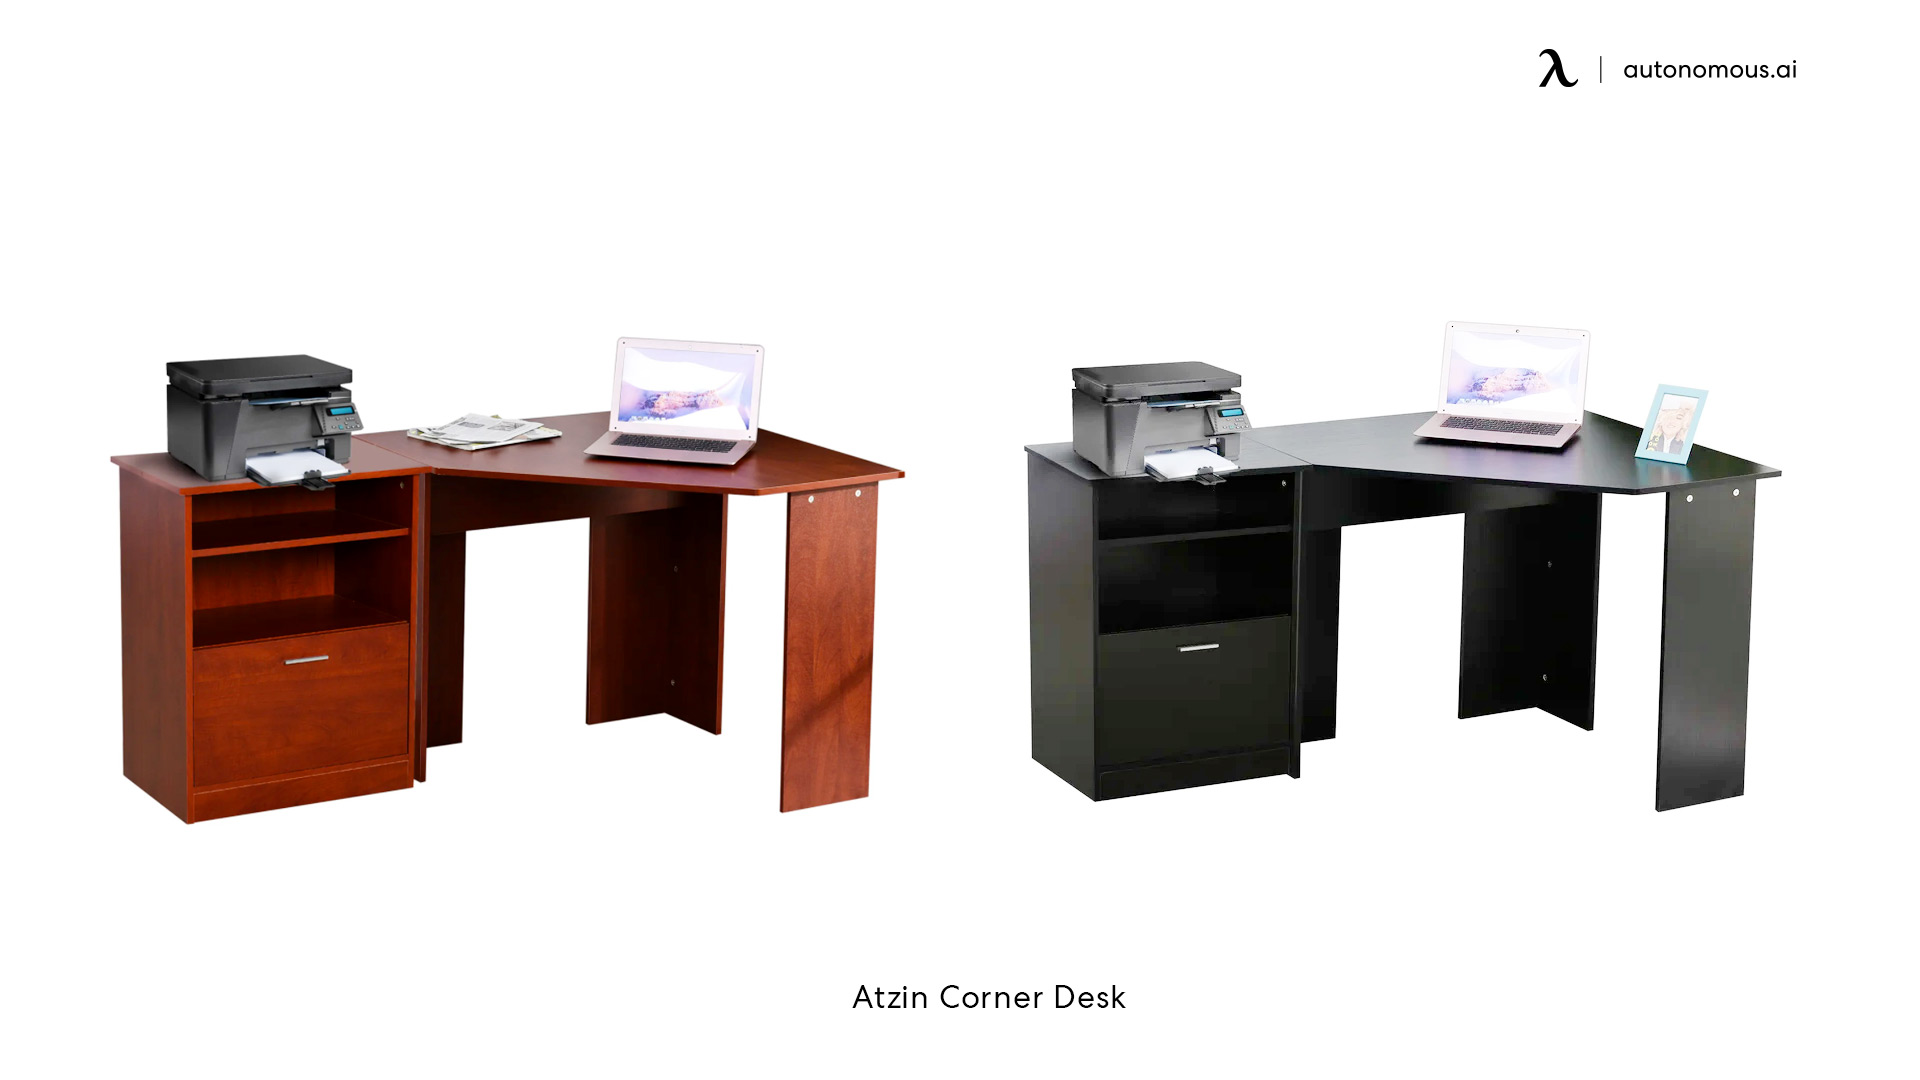 Atzin Corner Desk in Canada